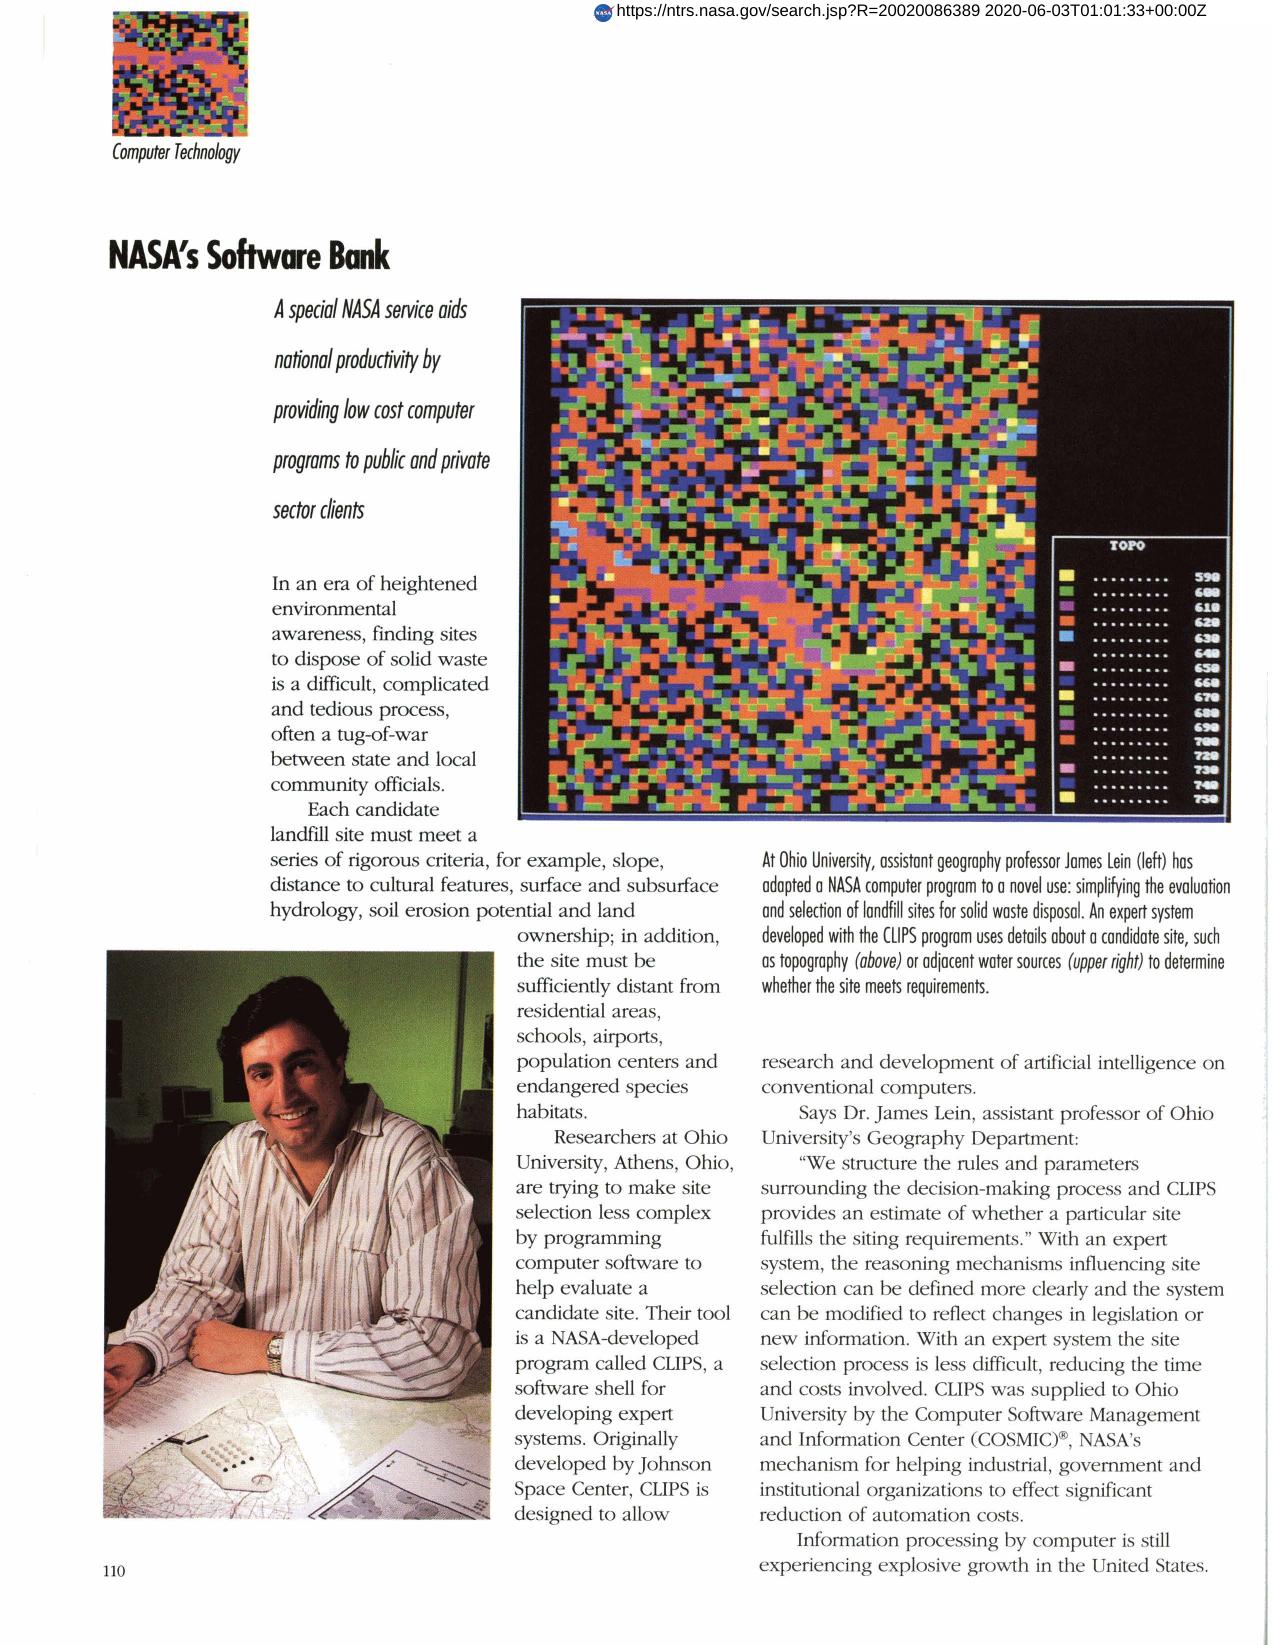 NASA's Software Bank (General Thermal Analysis)